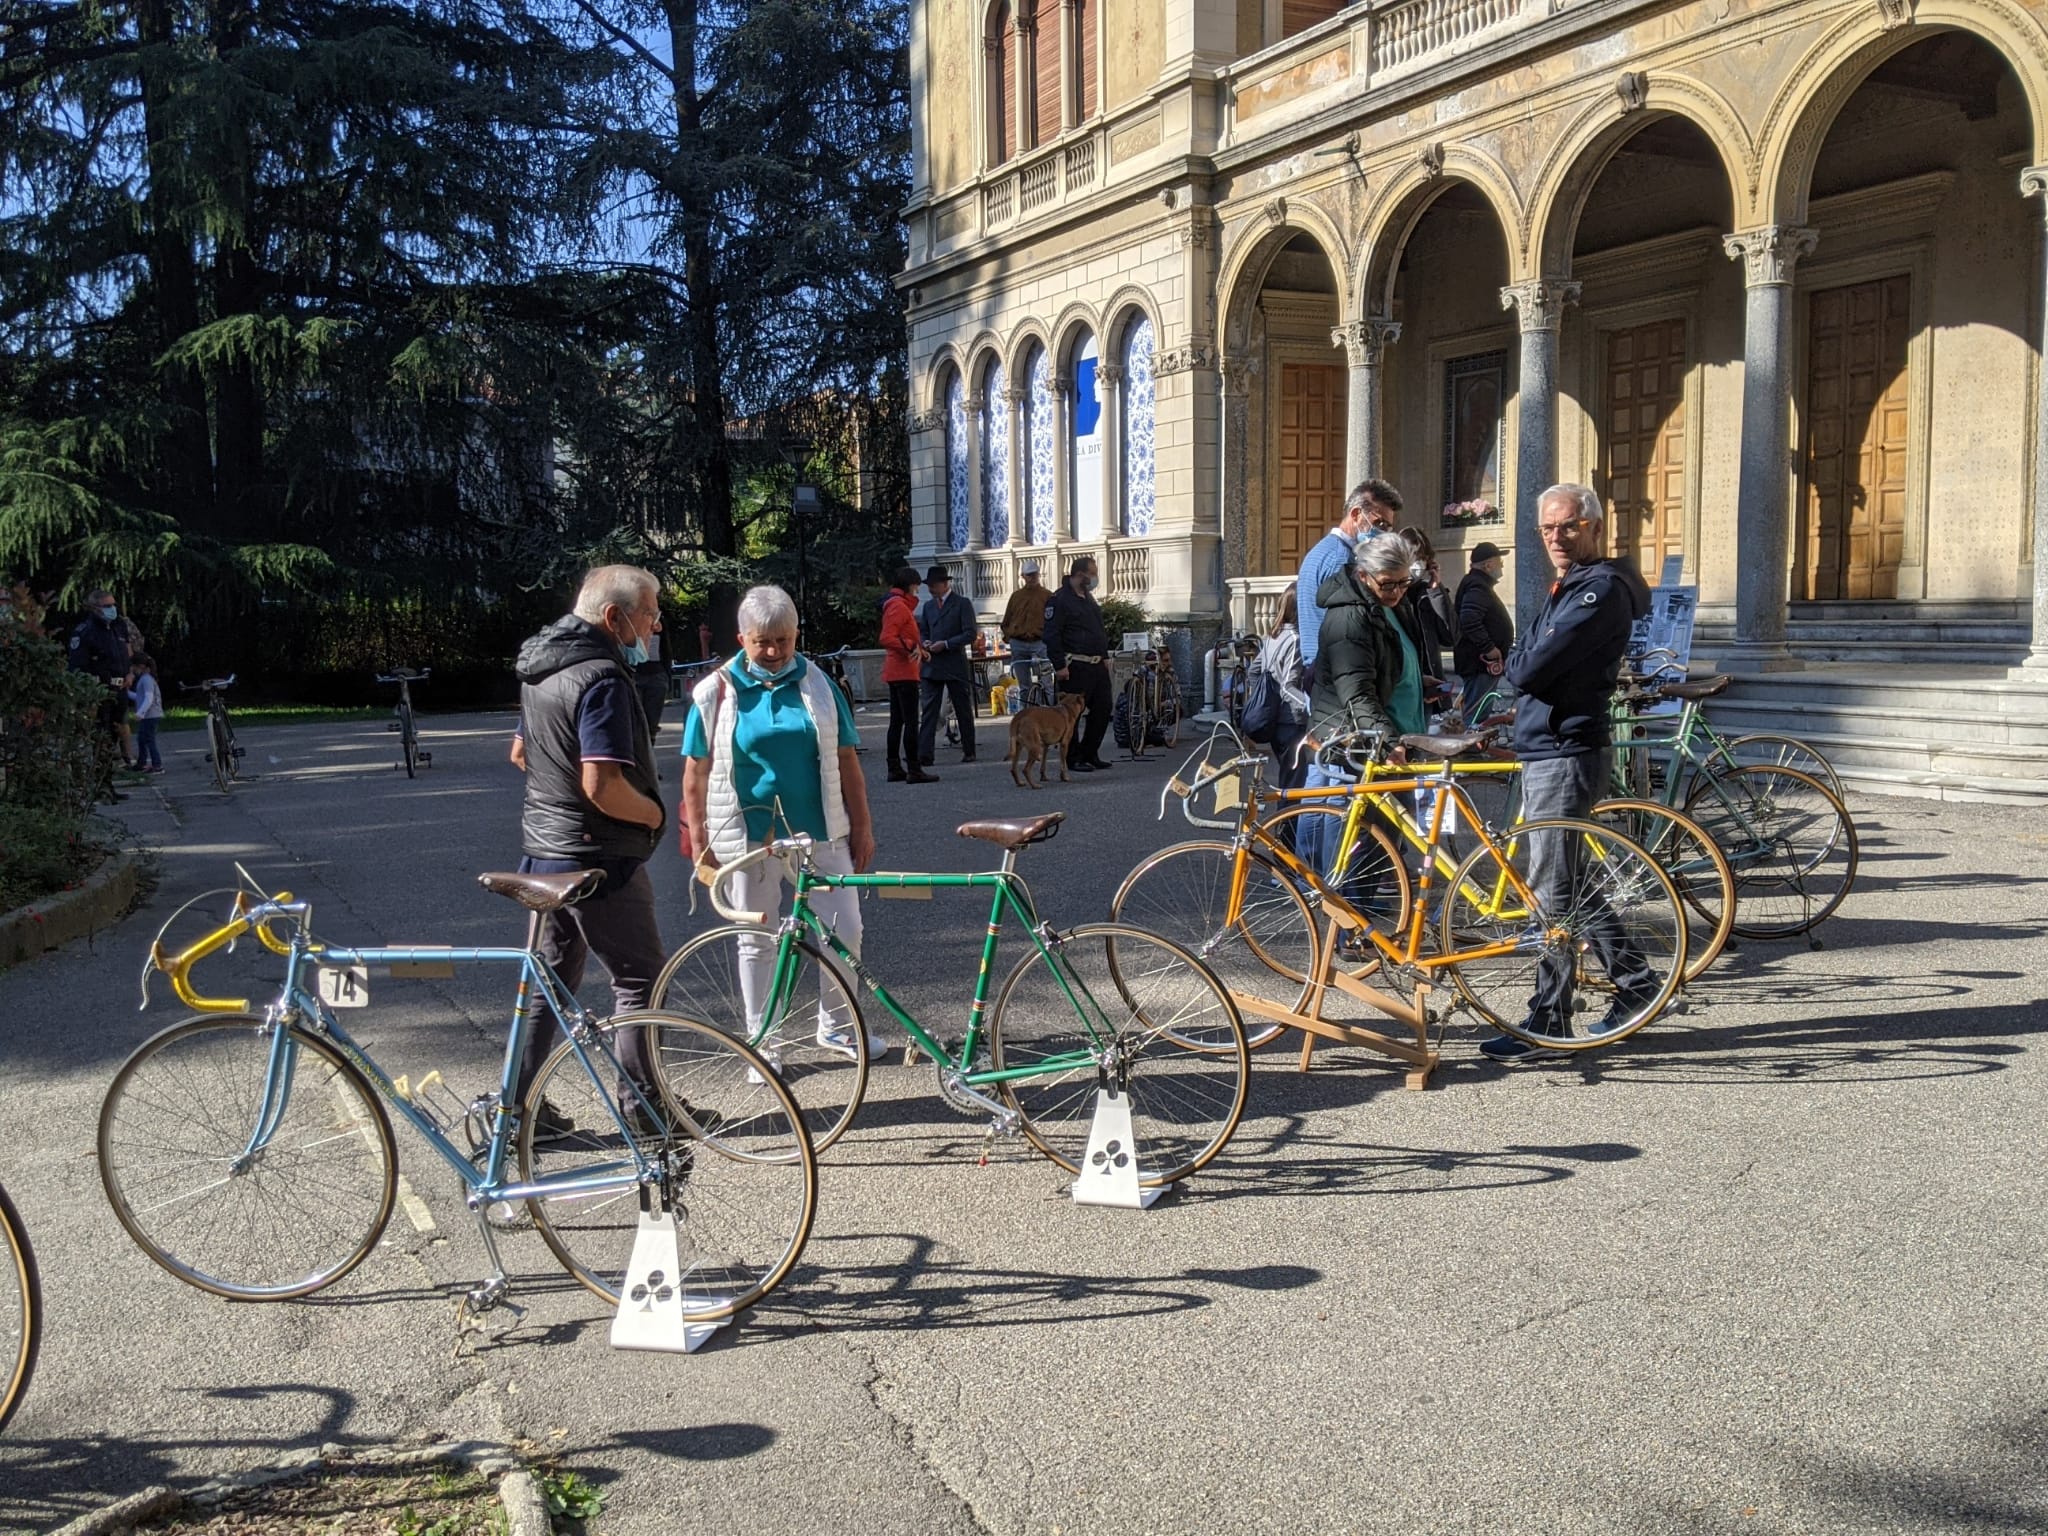 Gimkana, bici storiche e sfilata in centro: le foto della prima giornata della bike week saronnese